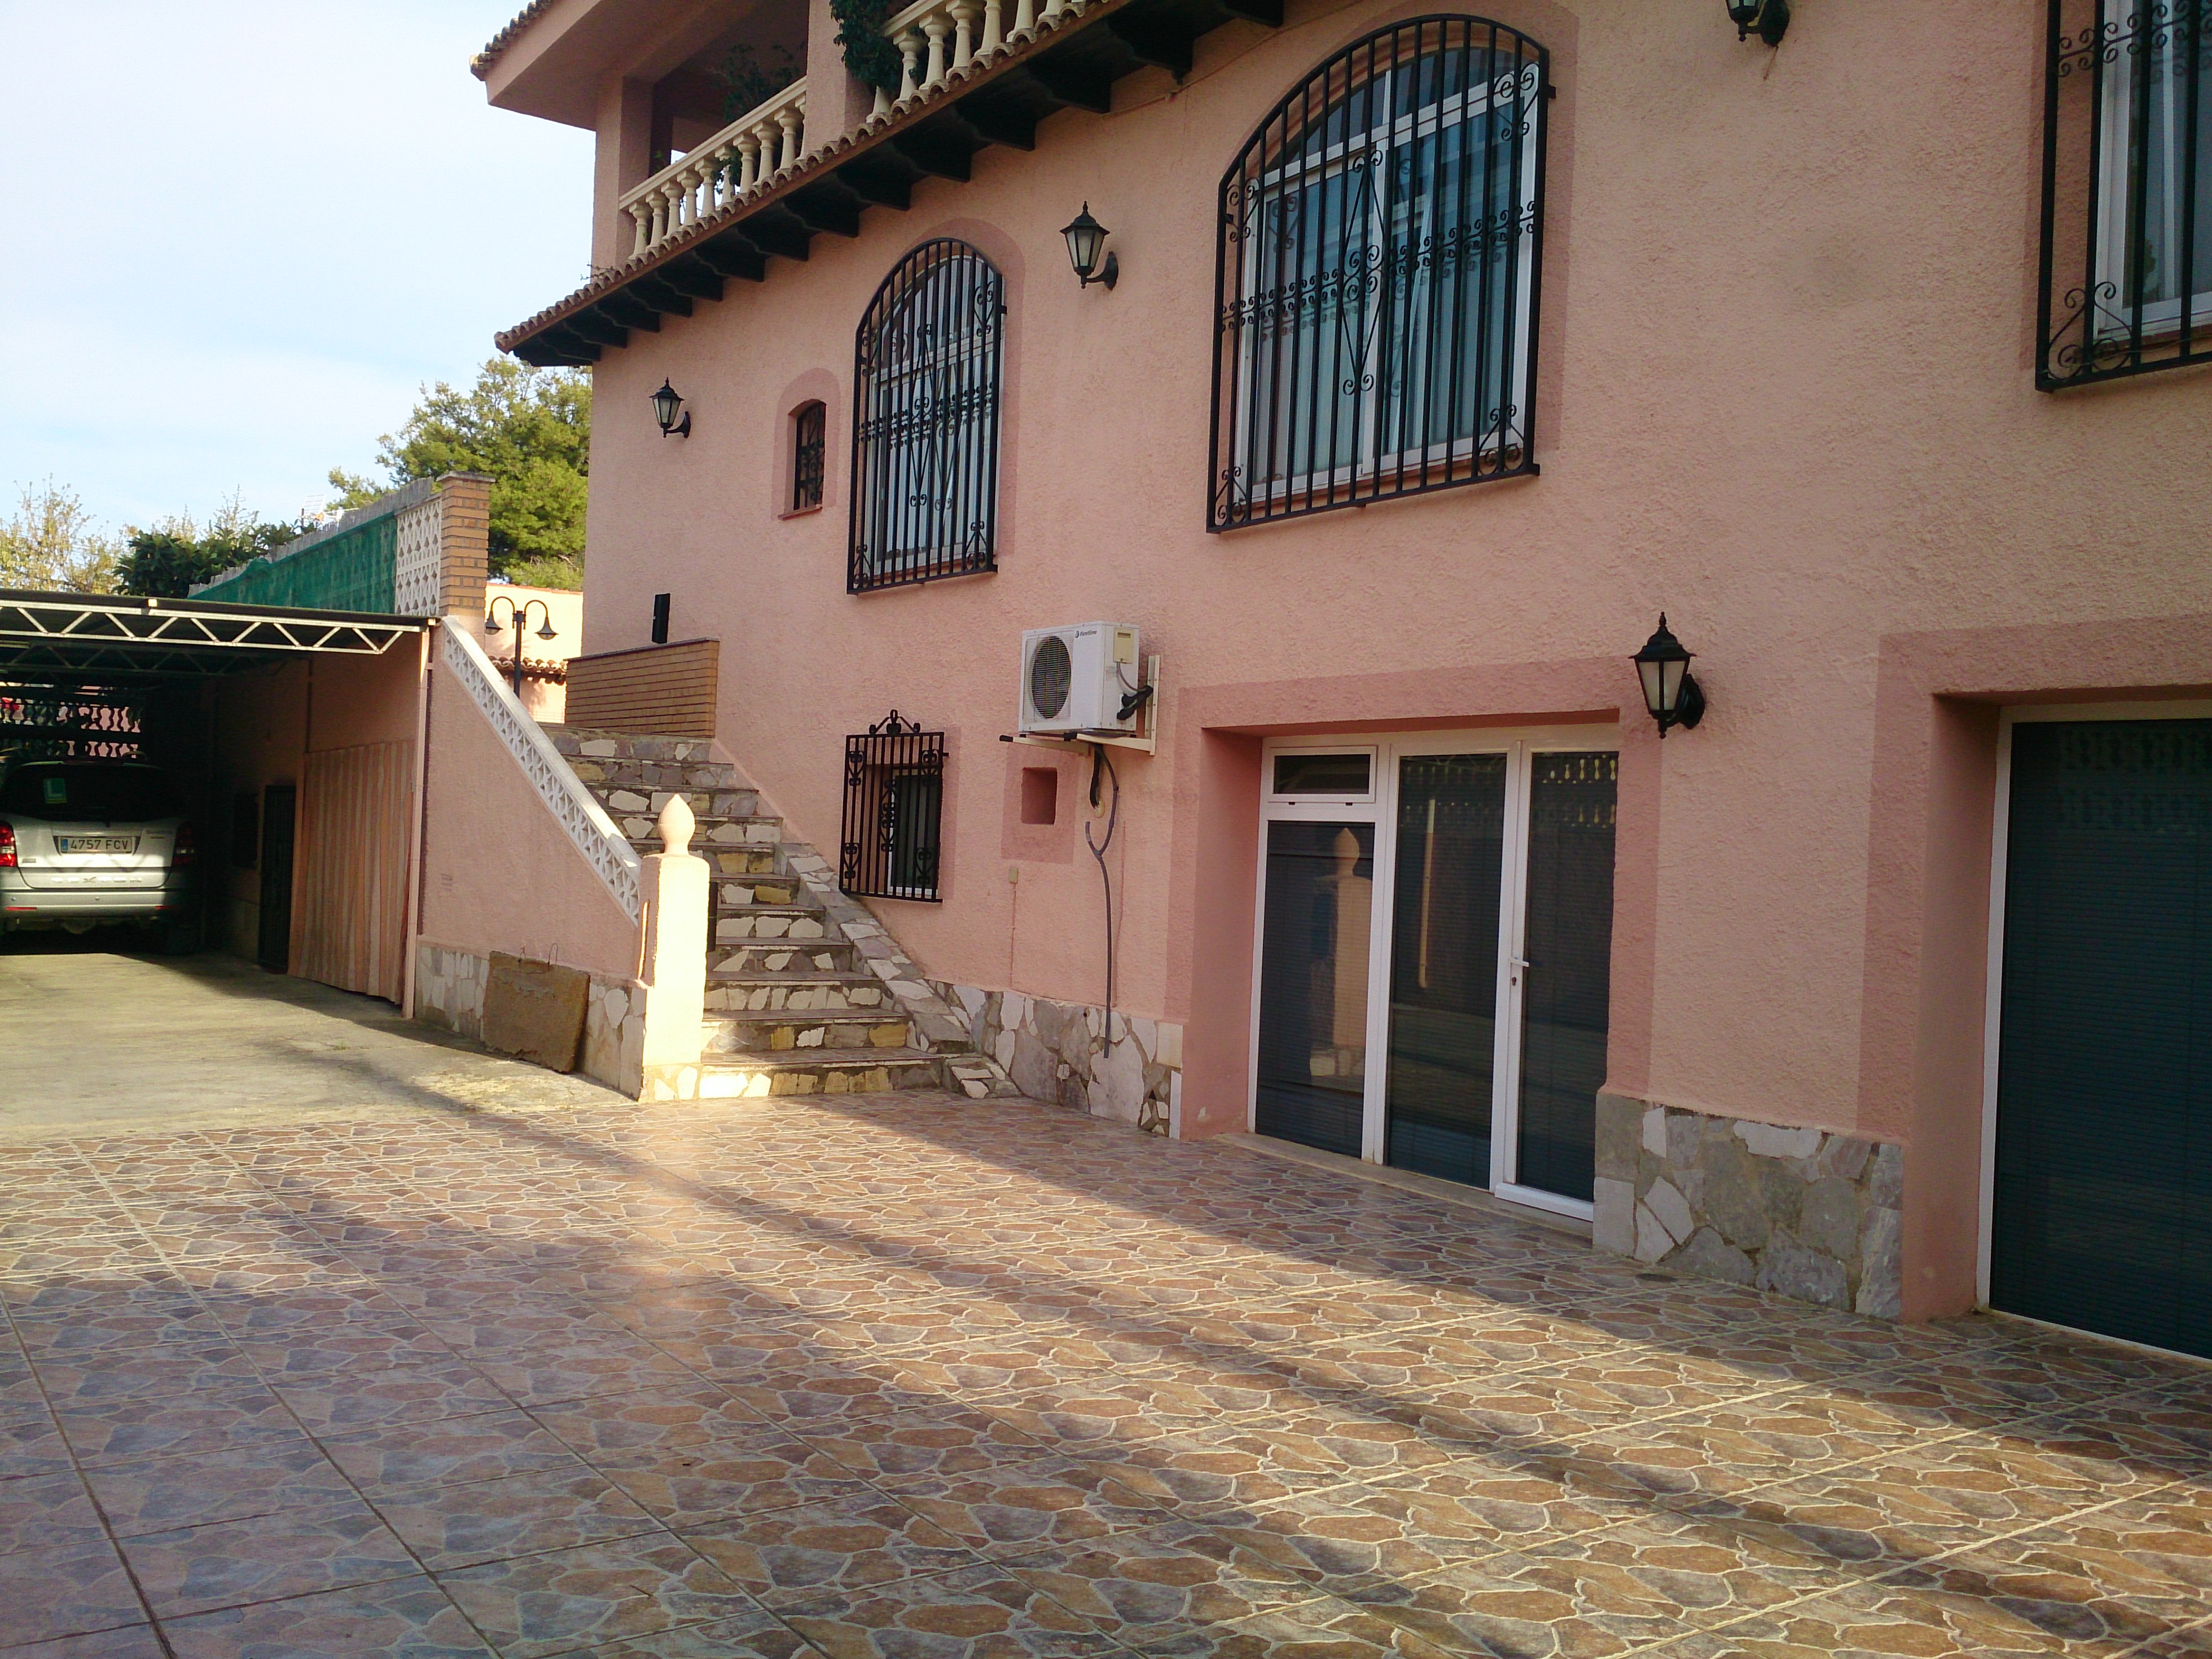 Вилла на продажу в Альбире: возможность инвестиций в недвижимость в Альбире